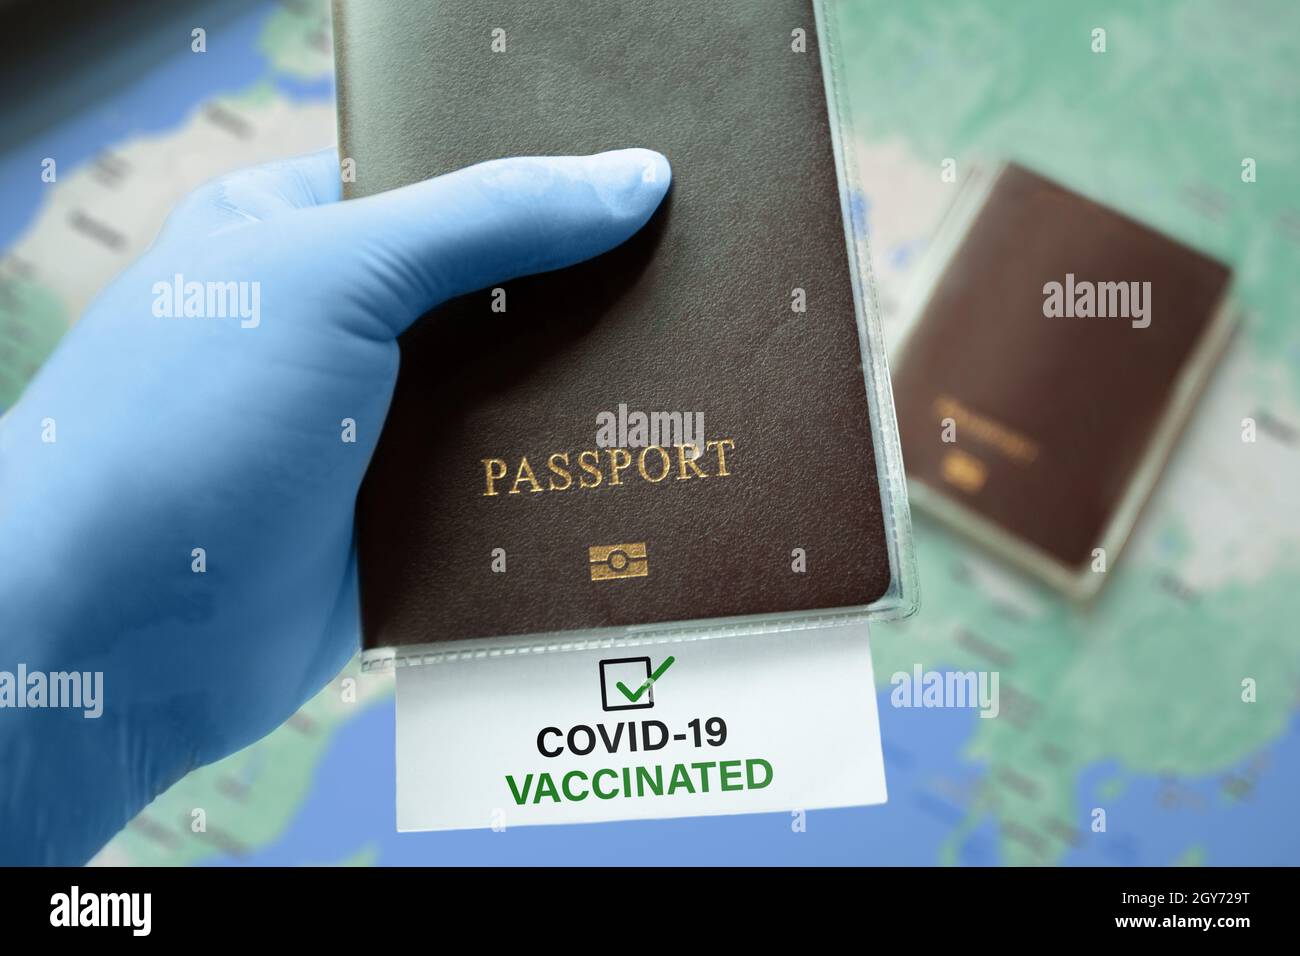 Portare con sé guanti medici che tengono il passaporto con COVID-19 vaccinato nota con segno di spunta sulla mappa. Situazione di focolaio di coronavirus, viaggiando dopo pandemia Foto Stock